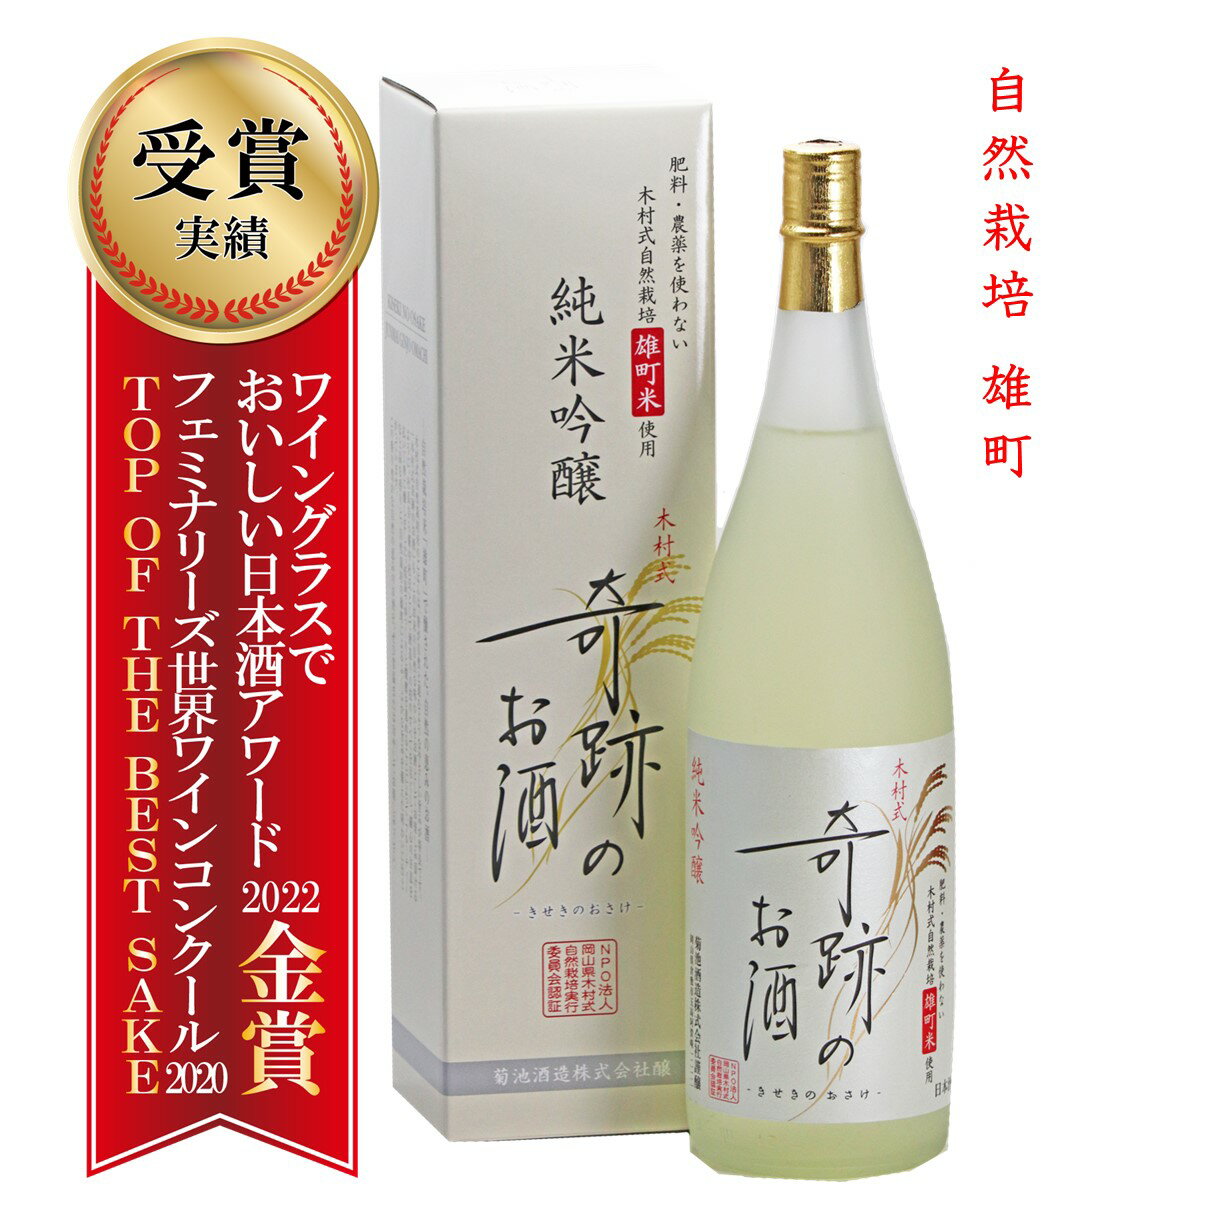 肥料・農薬を使用しない自然栽培 雄町で醸した日本酒 ギフトにもご自...